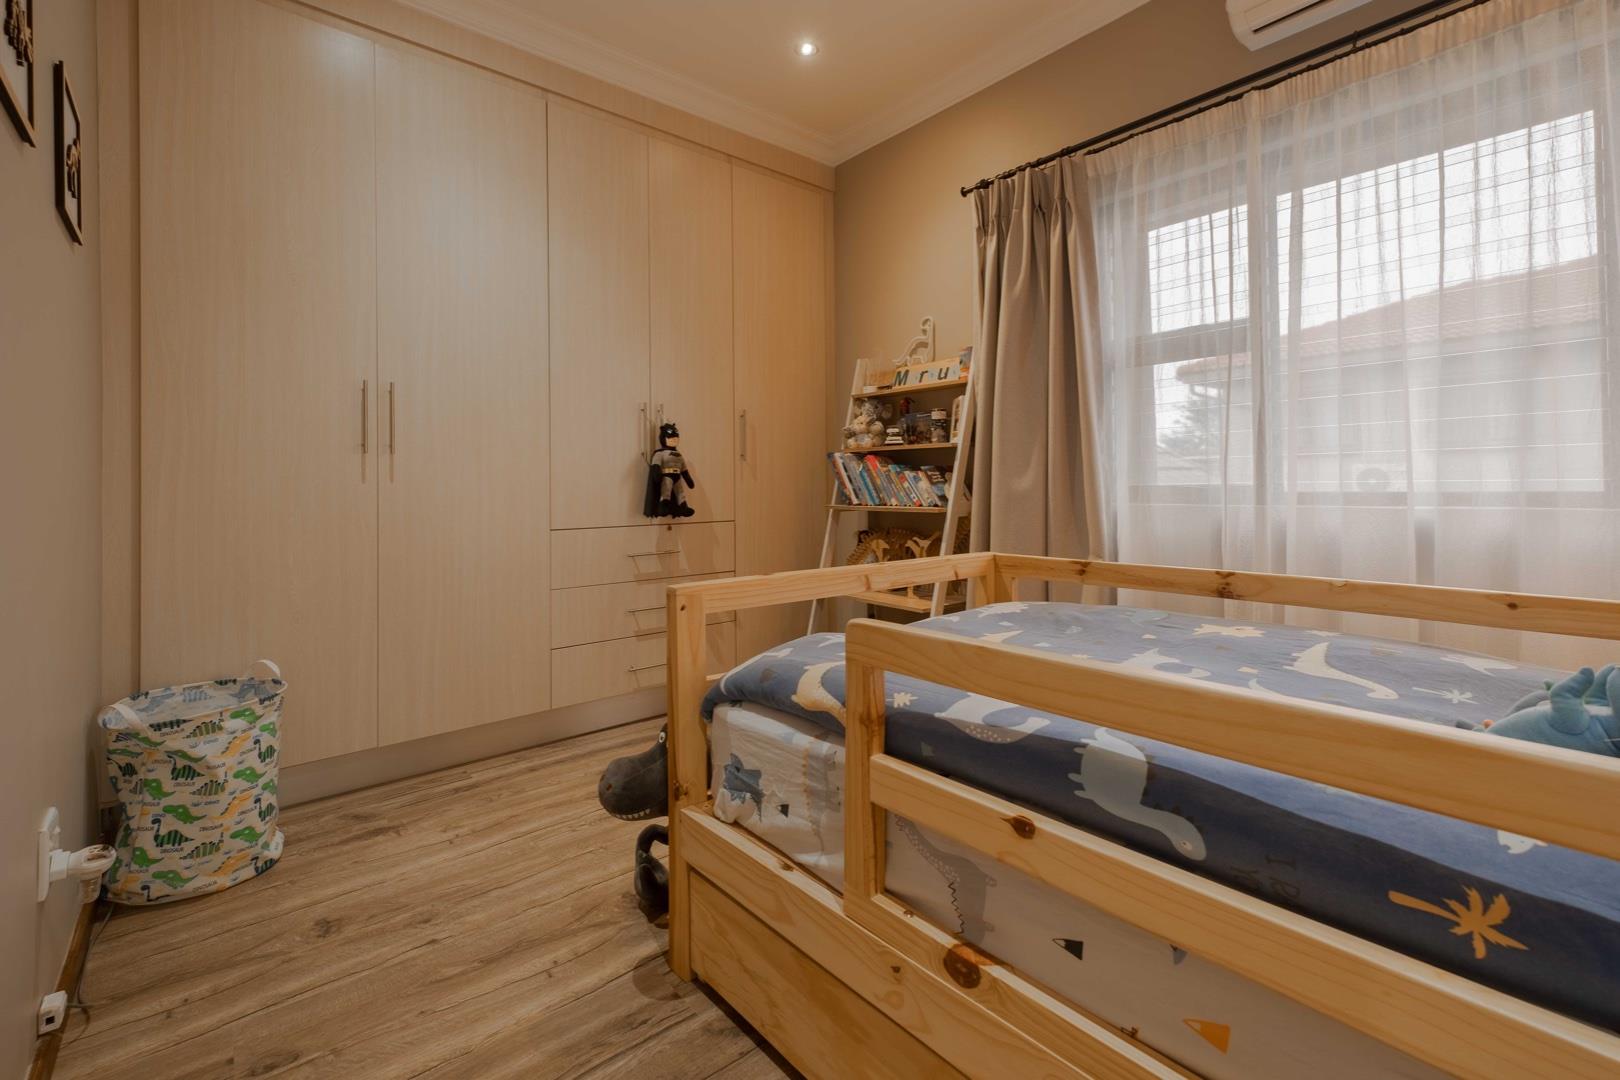 4 Bedroom Property for Sale in Olympus Gauteng